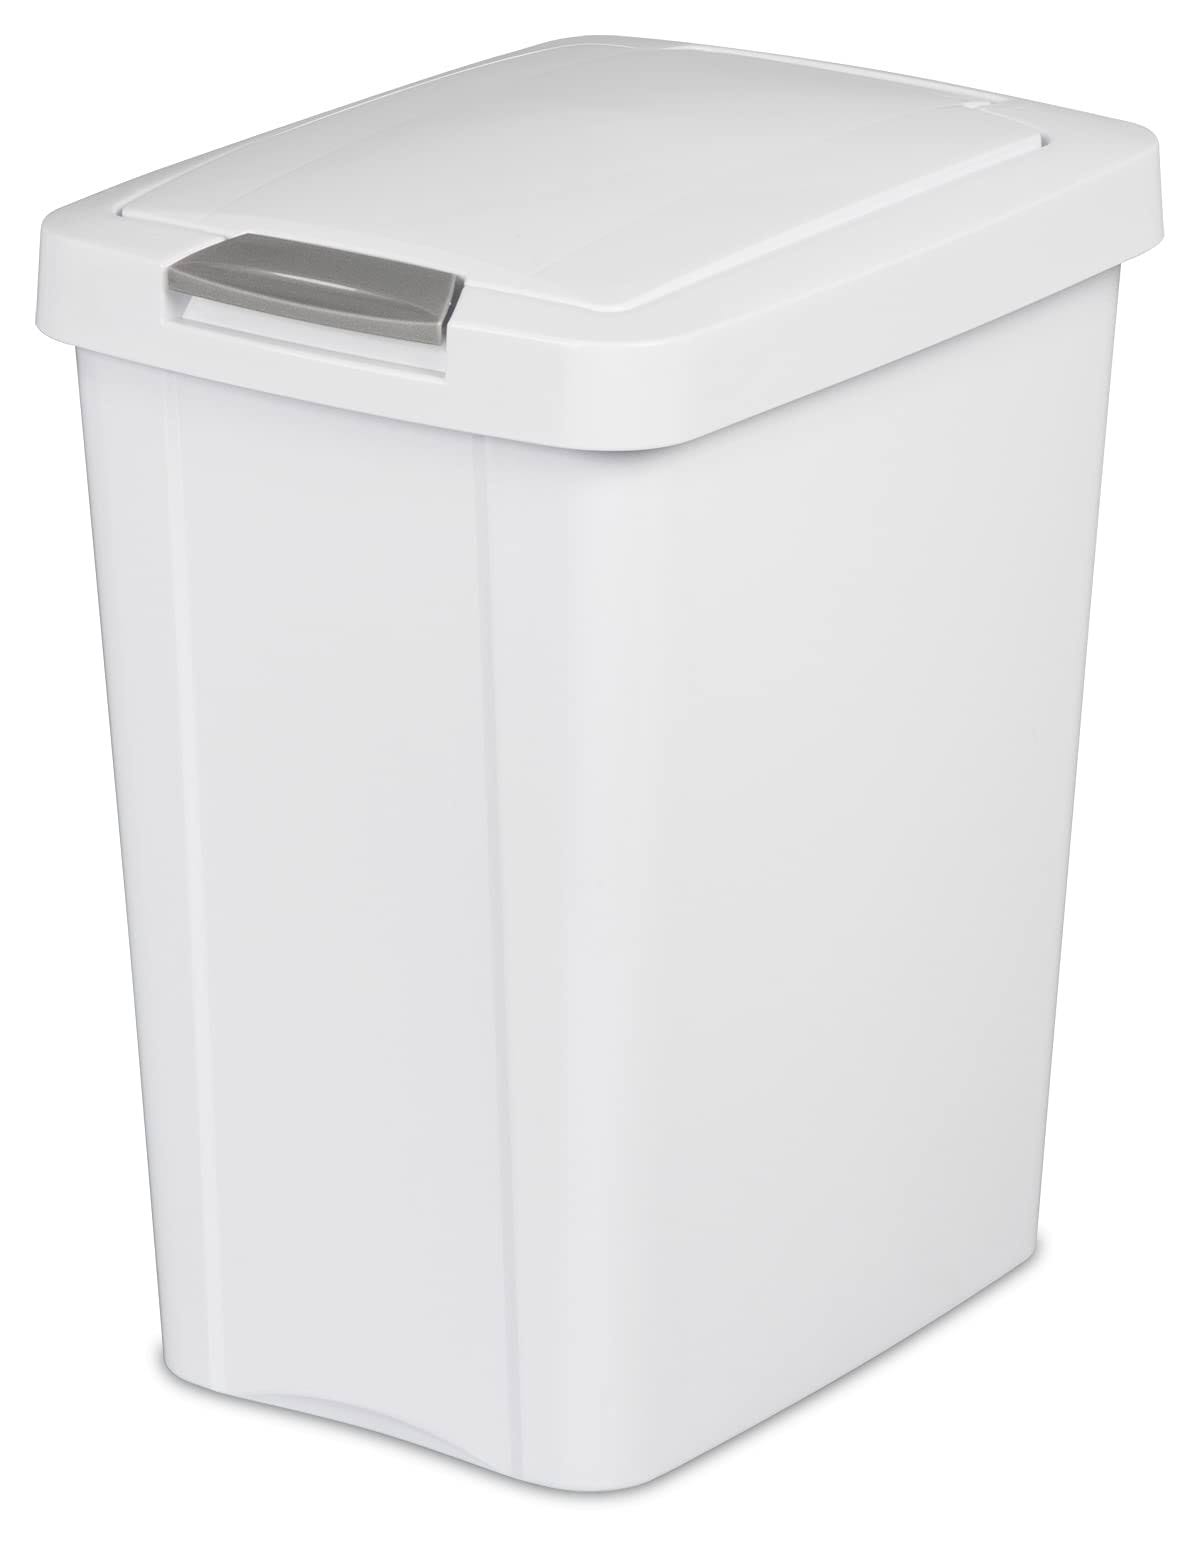 Sterilite 7.5-Gallon White Indoor Garbage Can